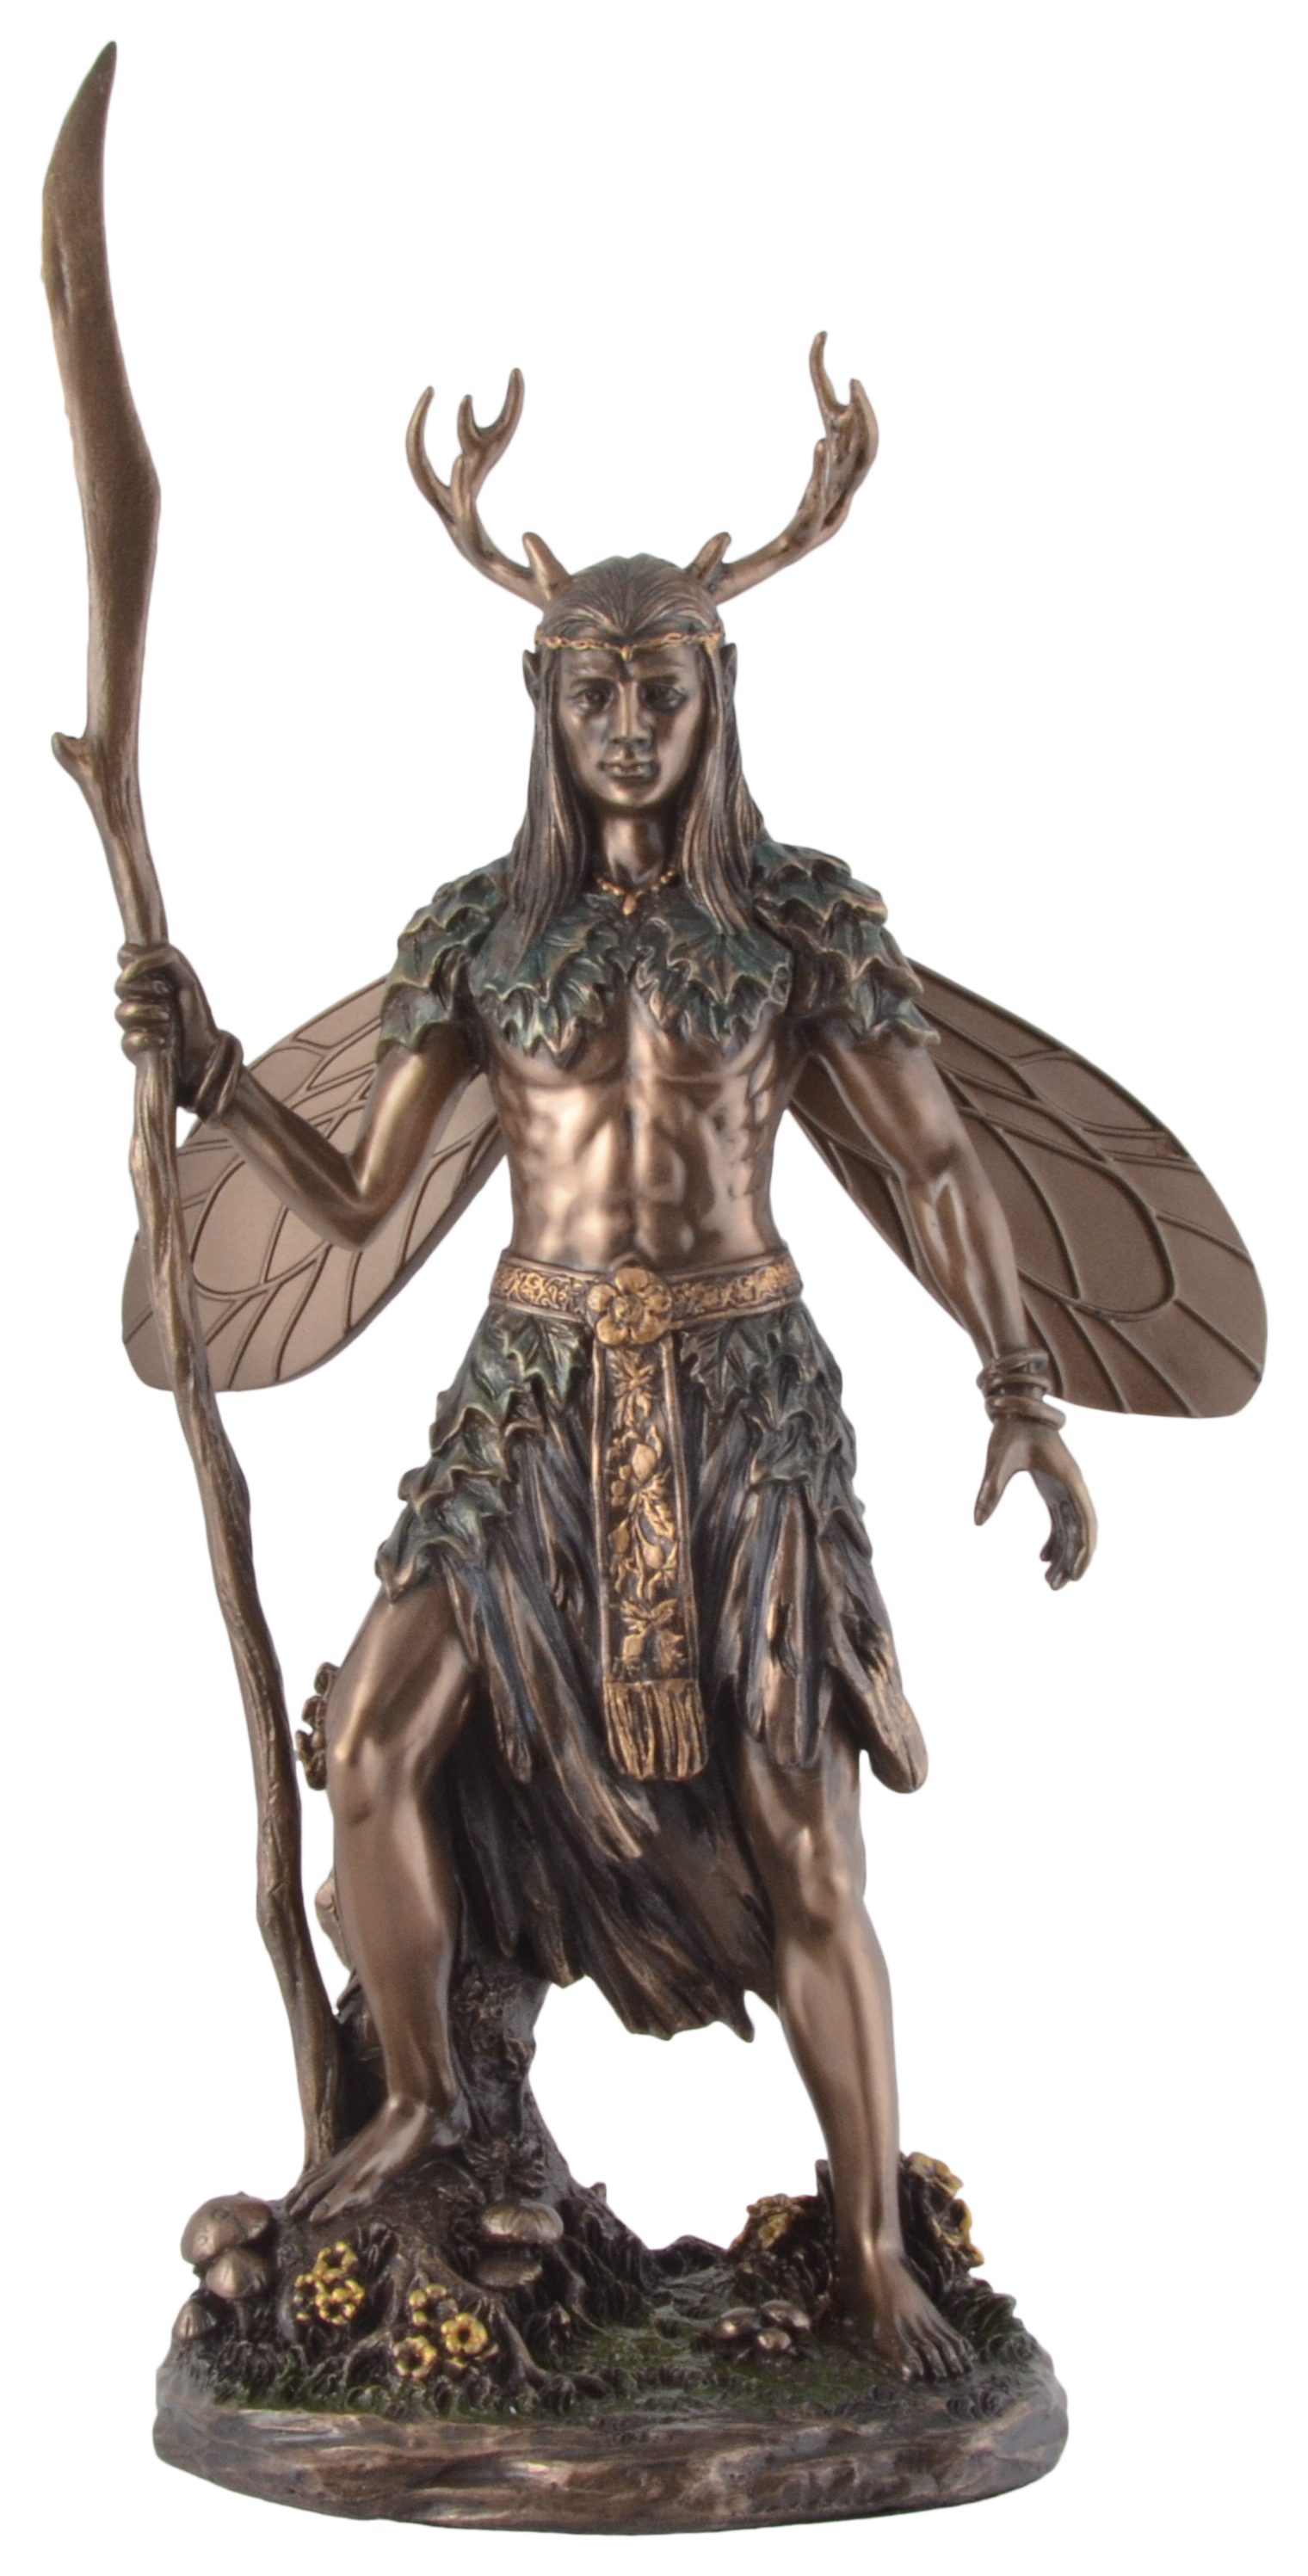 Vogler direct Gmbh Dekofigur Keltischer Druide mit Hirschgeweih - bronziert/coloriert by Veronese, coloriert und bronziert, Veronese, Größe: L/B/H ca. 14x8x27cm